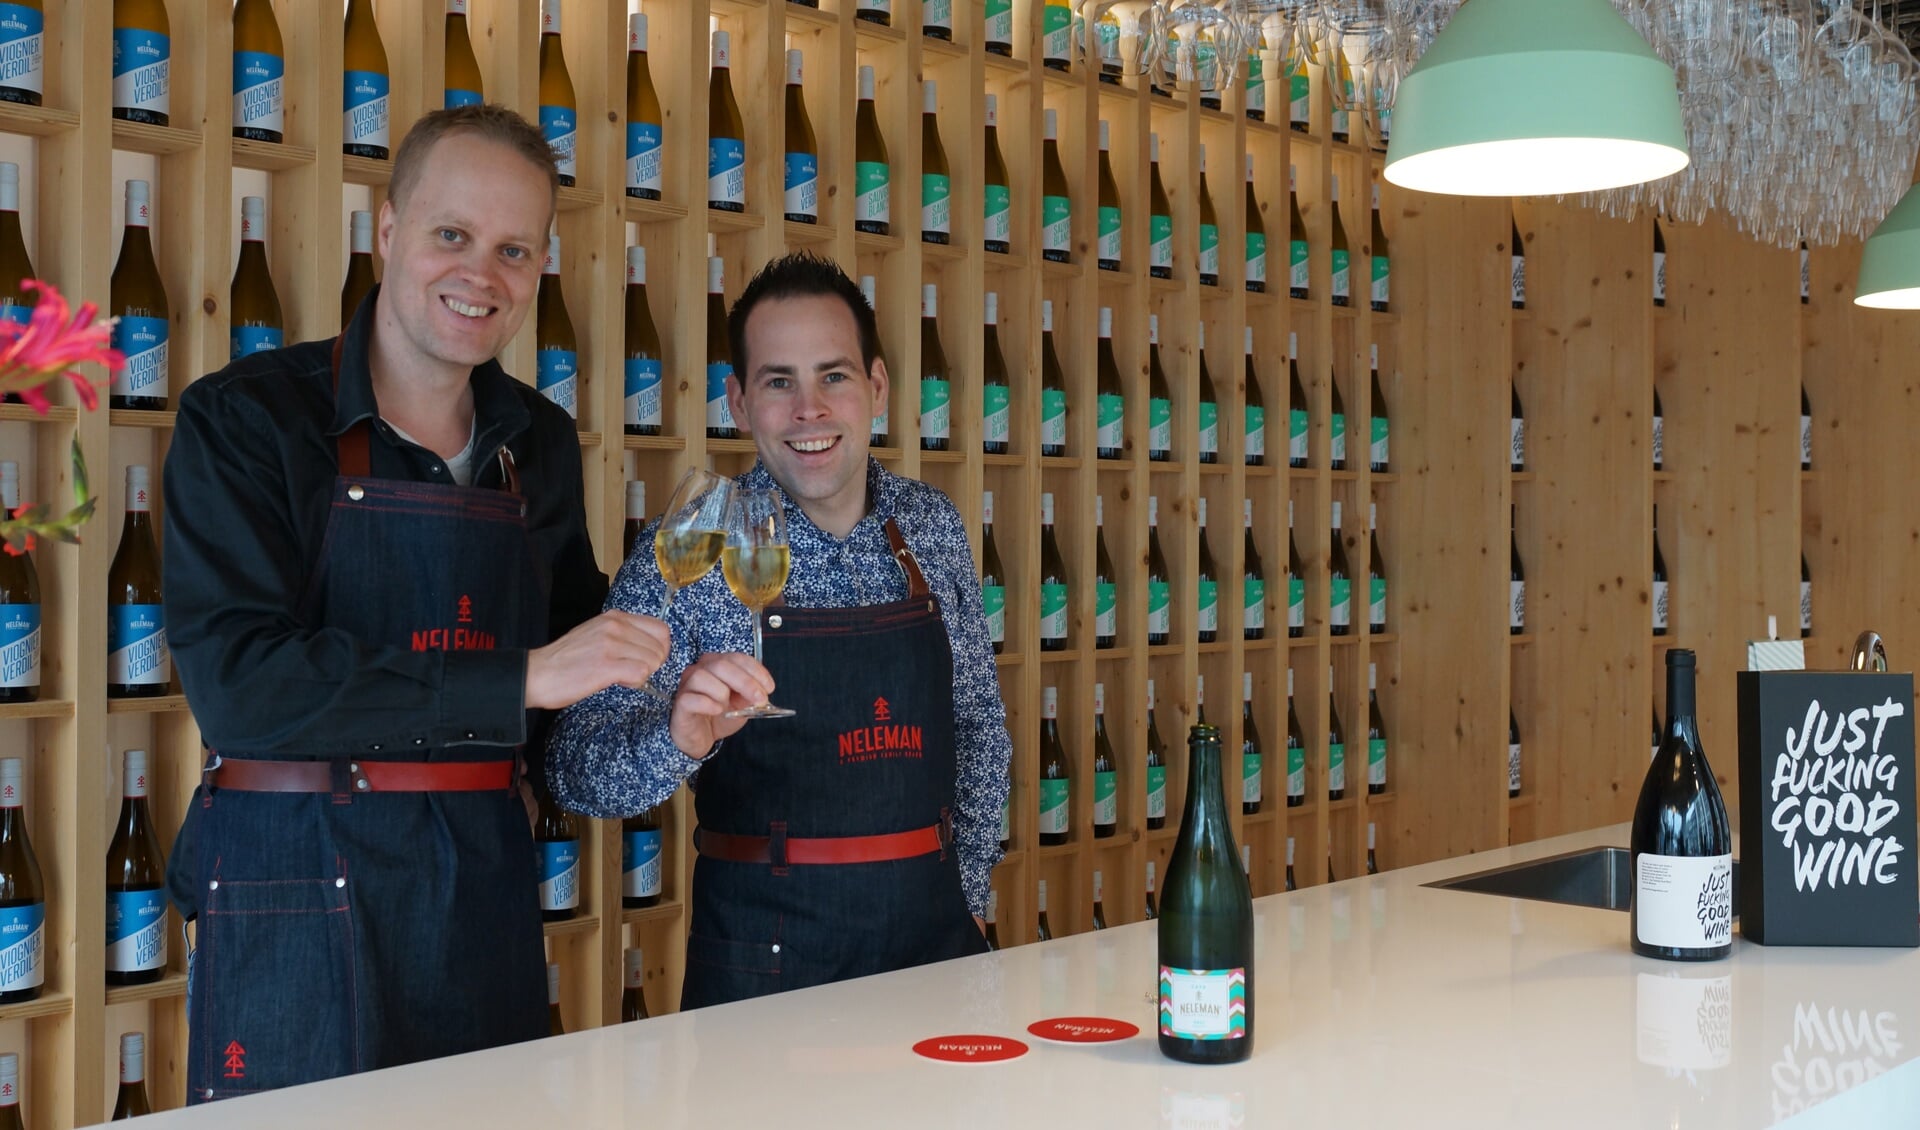 Directeur Derrick Neleman en medewerker Edwin van Muilekom proosten op de bekroning van de wijnen. Foto: Bas Bloem